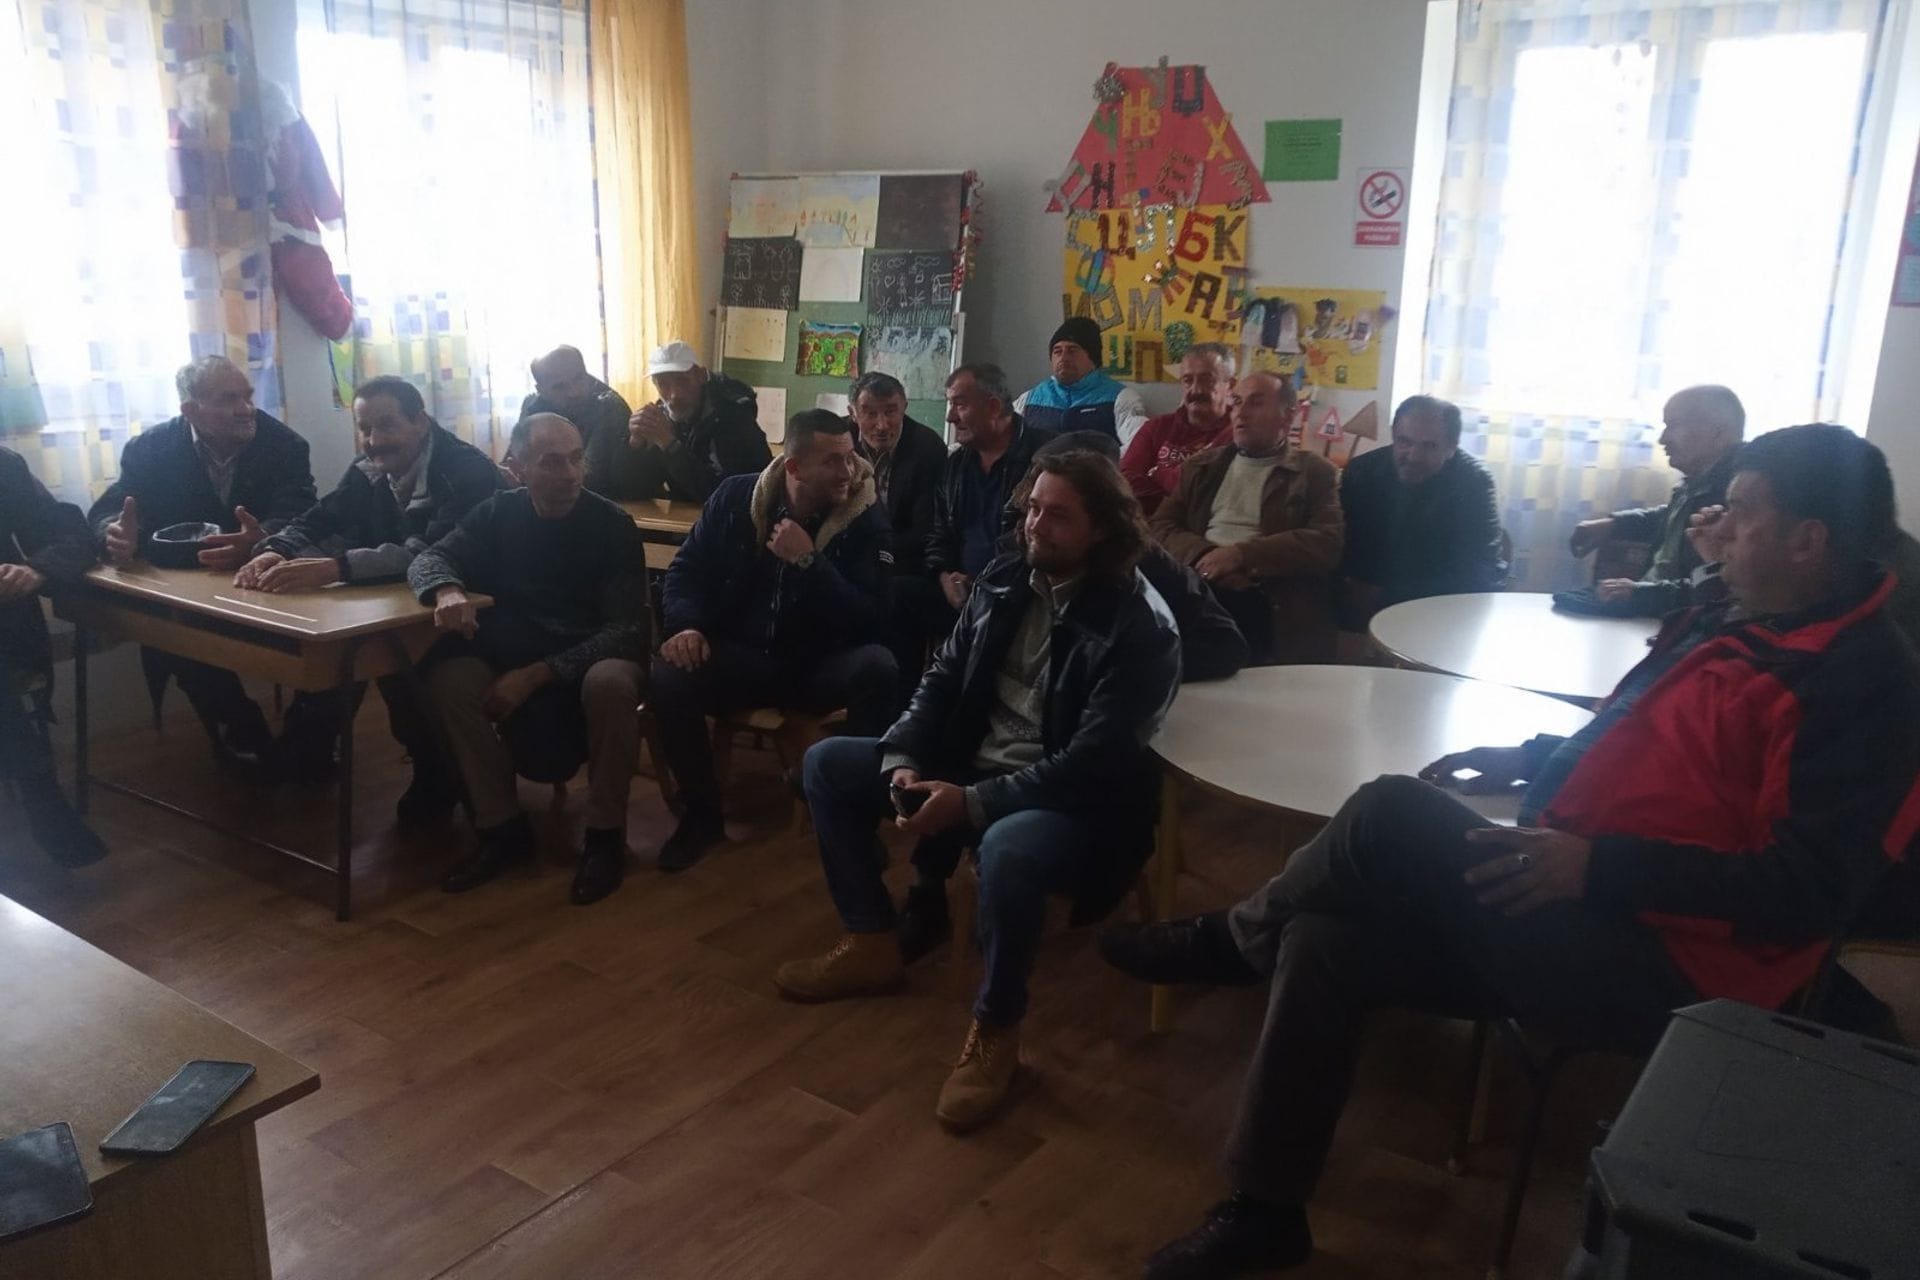 Ministar Stijović razgovarao sa poljoprivrednicima u Šavniku: Ministarstvo će podržati rješavanje problema oko vodosnabijevanja, elektrifikacije katuna i seoske infrastrukture